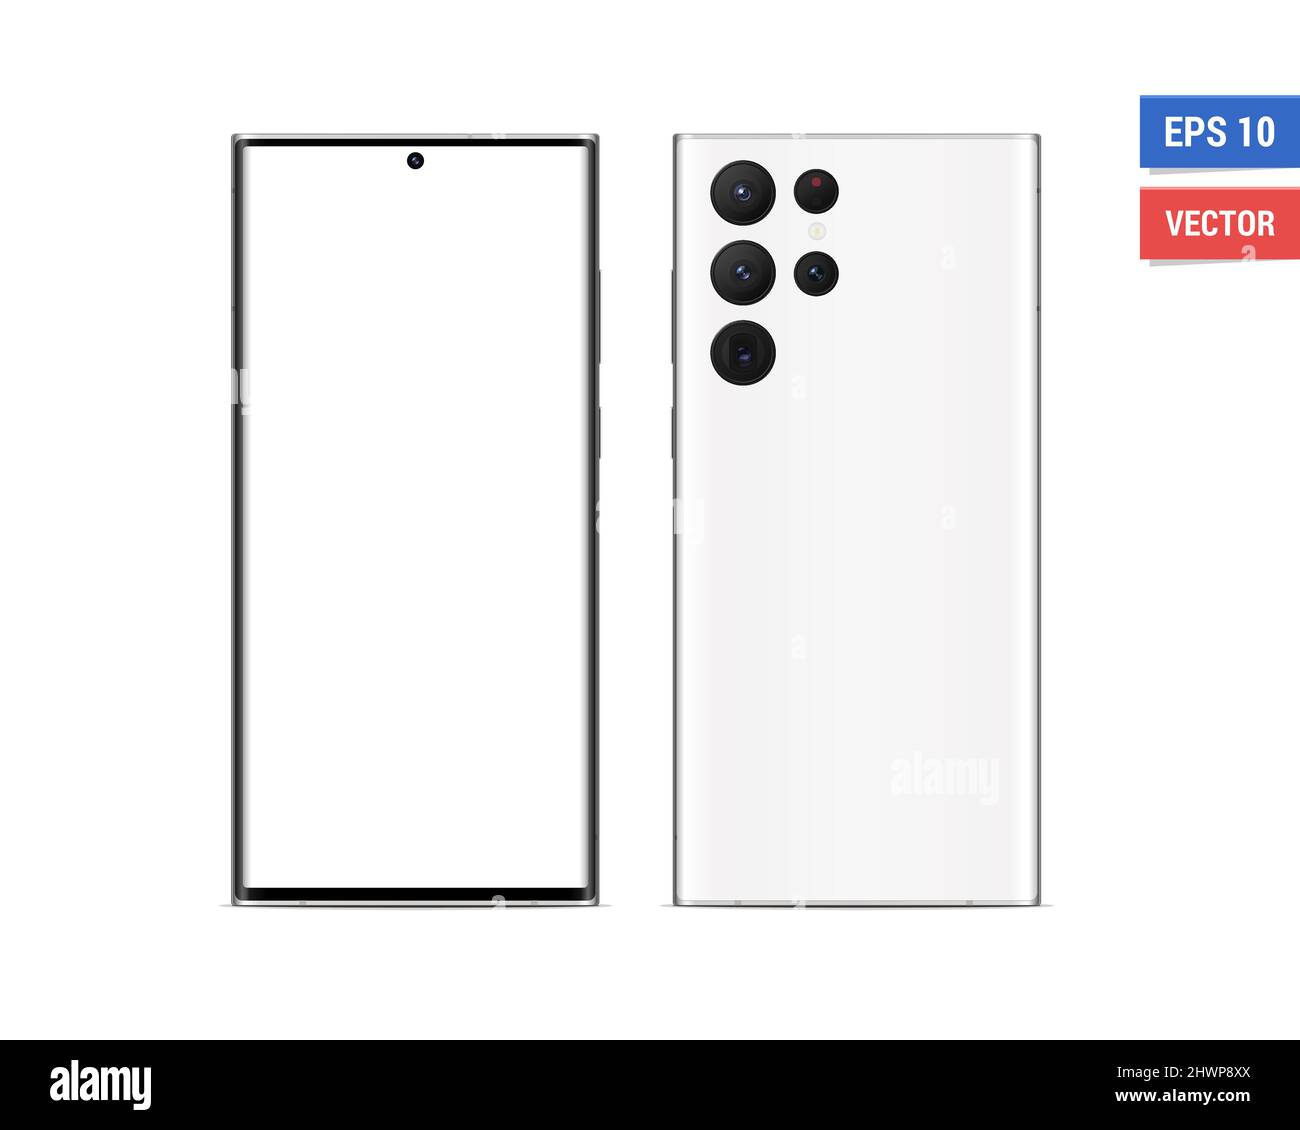 Với mẫu thiết kế mới nhất, bạn có thể dễ dàng tạo ra những bức hình ảnh Realistic Vector Flat Mock-up Samsung Galaxy S22 Ultra, chỉ với một số thao tác đơn giản. Hãy nhấn vào hình ảnh liên quan để cùng tham gia vào quá trình sáng tạo và trang trí cho chiếc điện thoại của bạn.